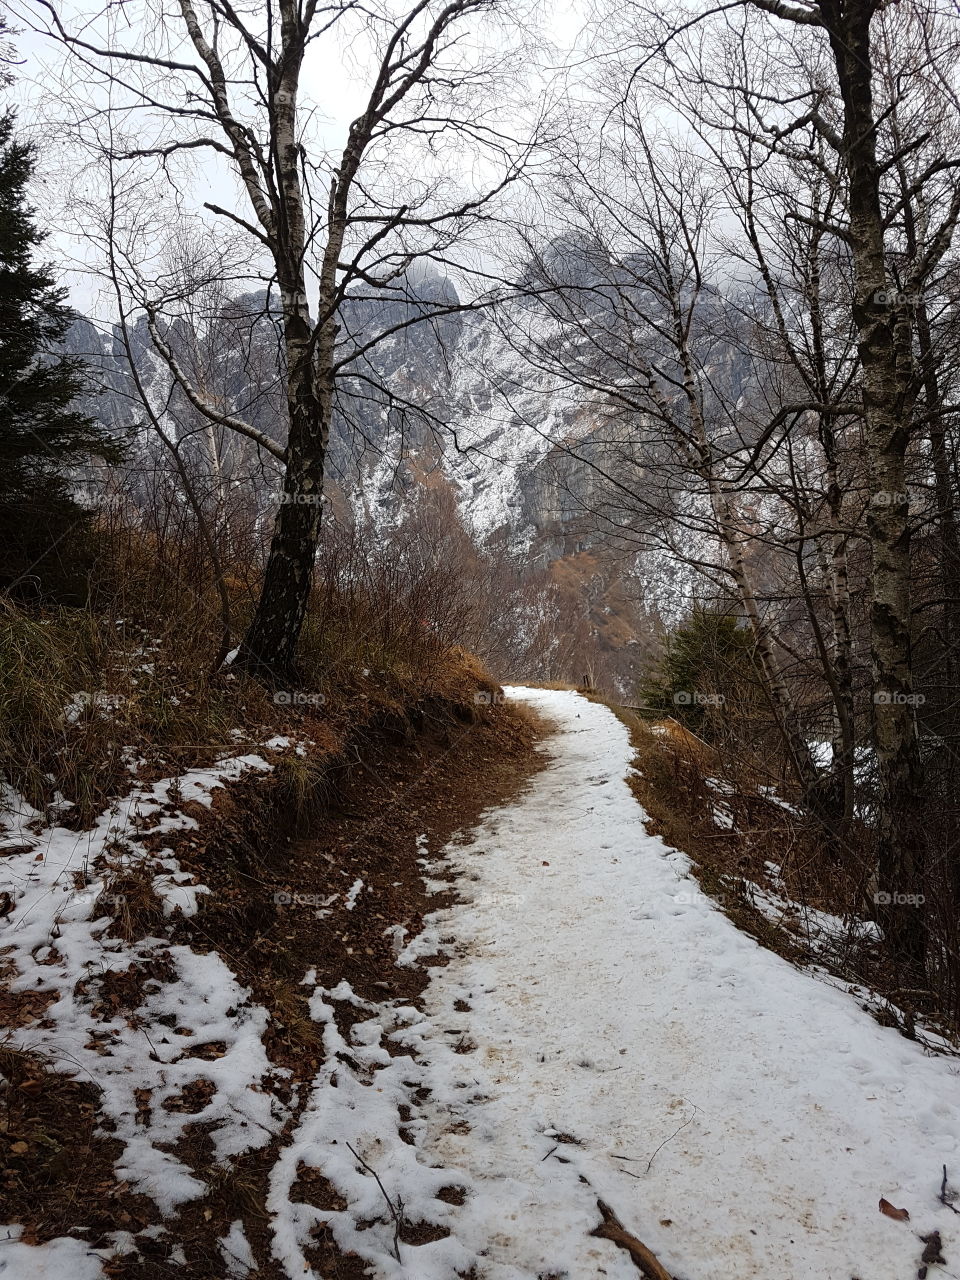 Mountain's path